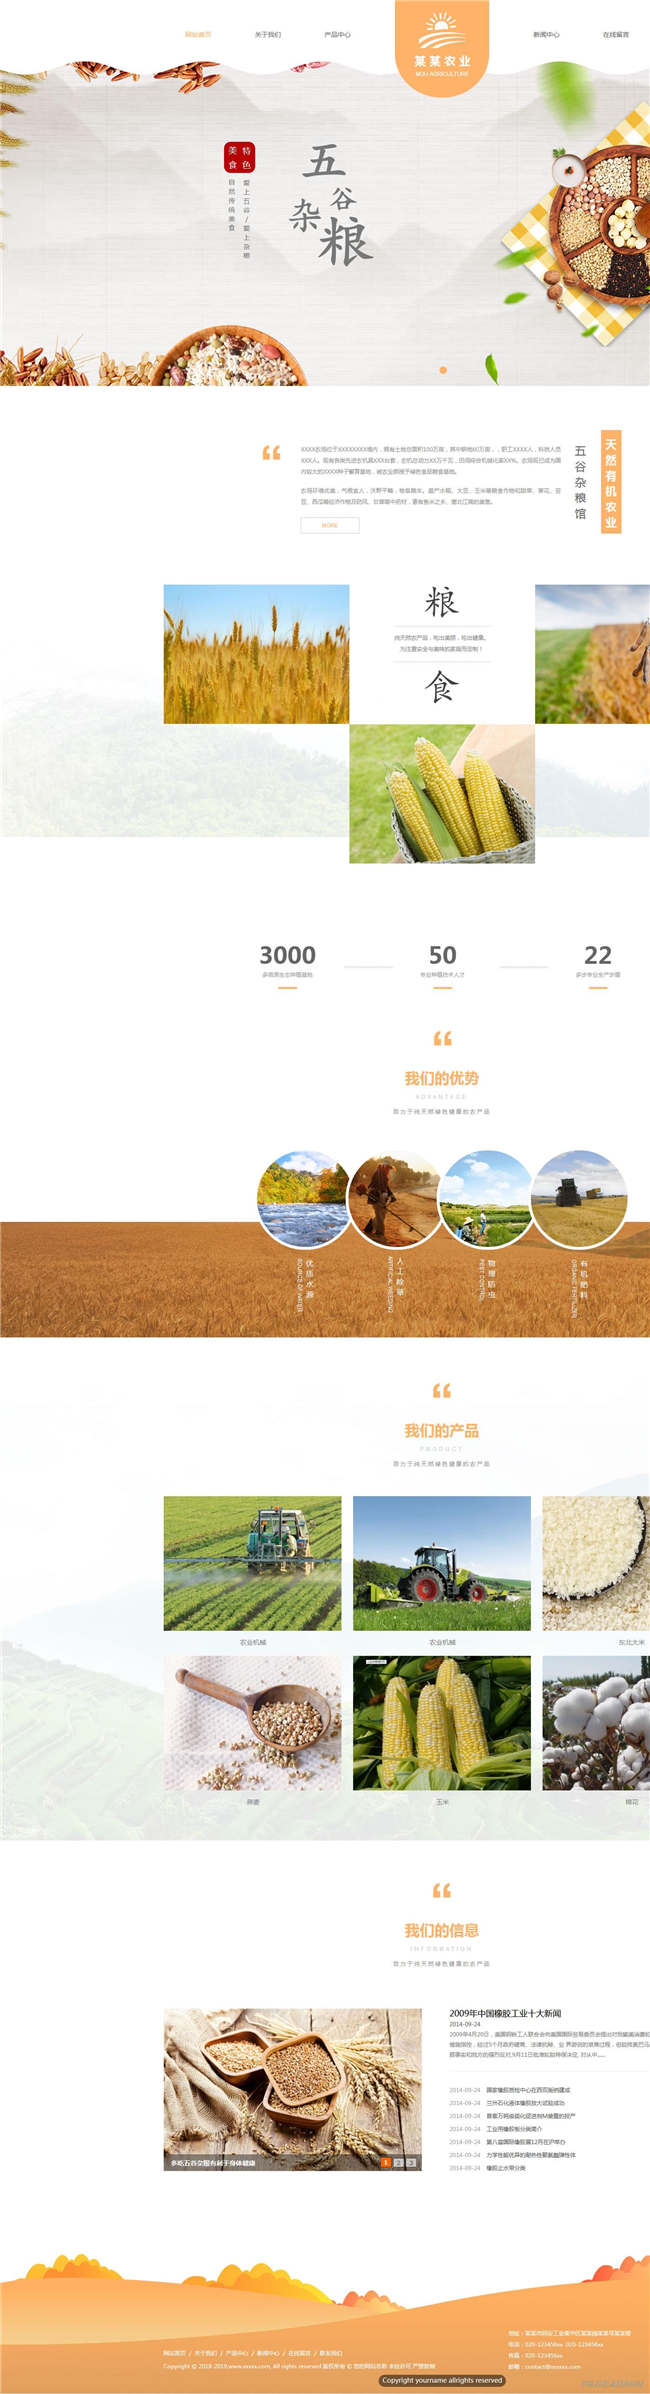 响应式农贸企业农业贸易进出口农产品网站Wordpress模板预览图